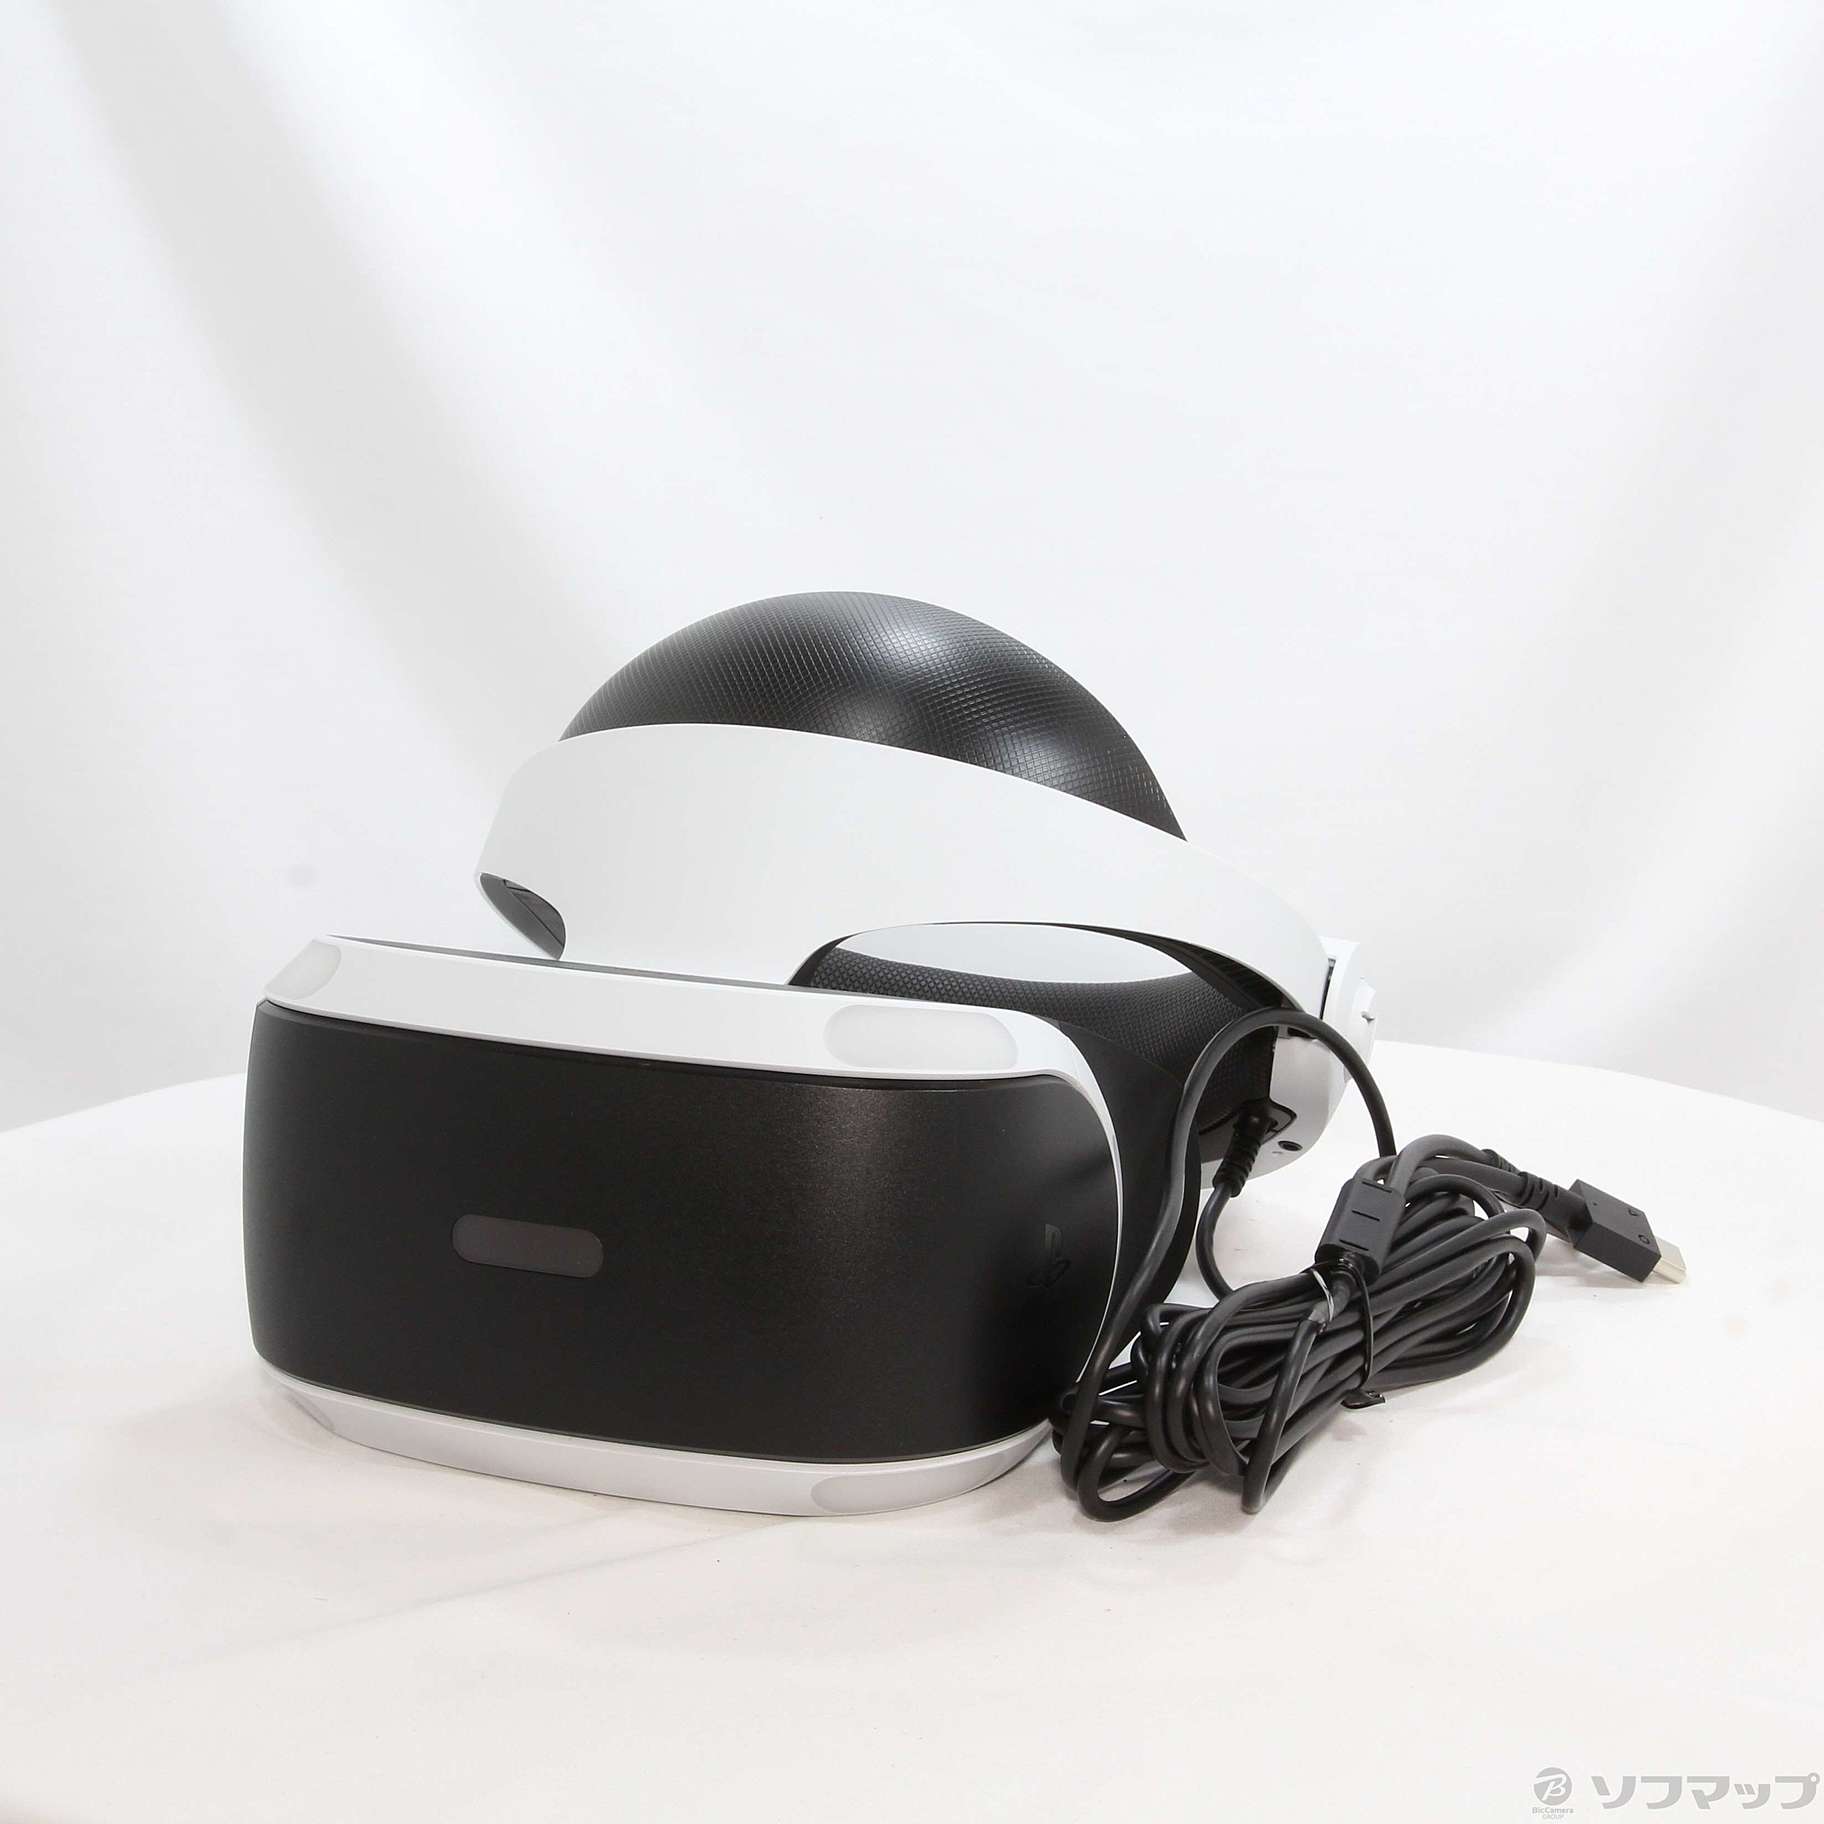 セール対象品 PlayStation VR 「PlayStation VR WORLDS」 特典封入版